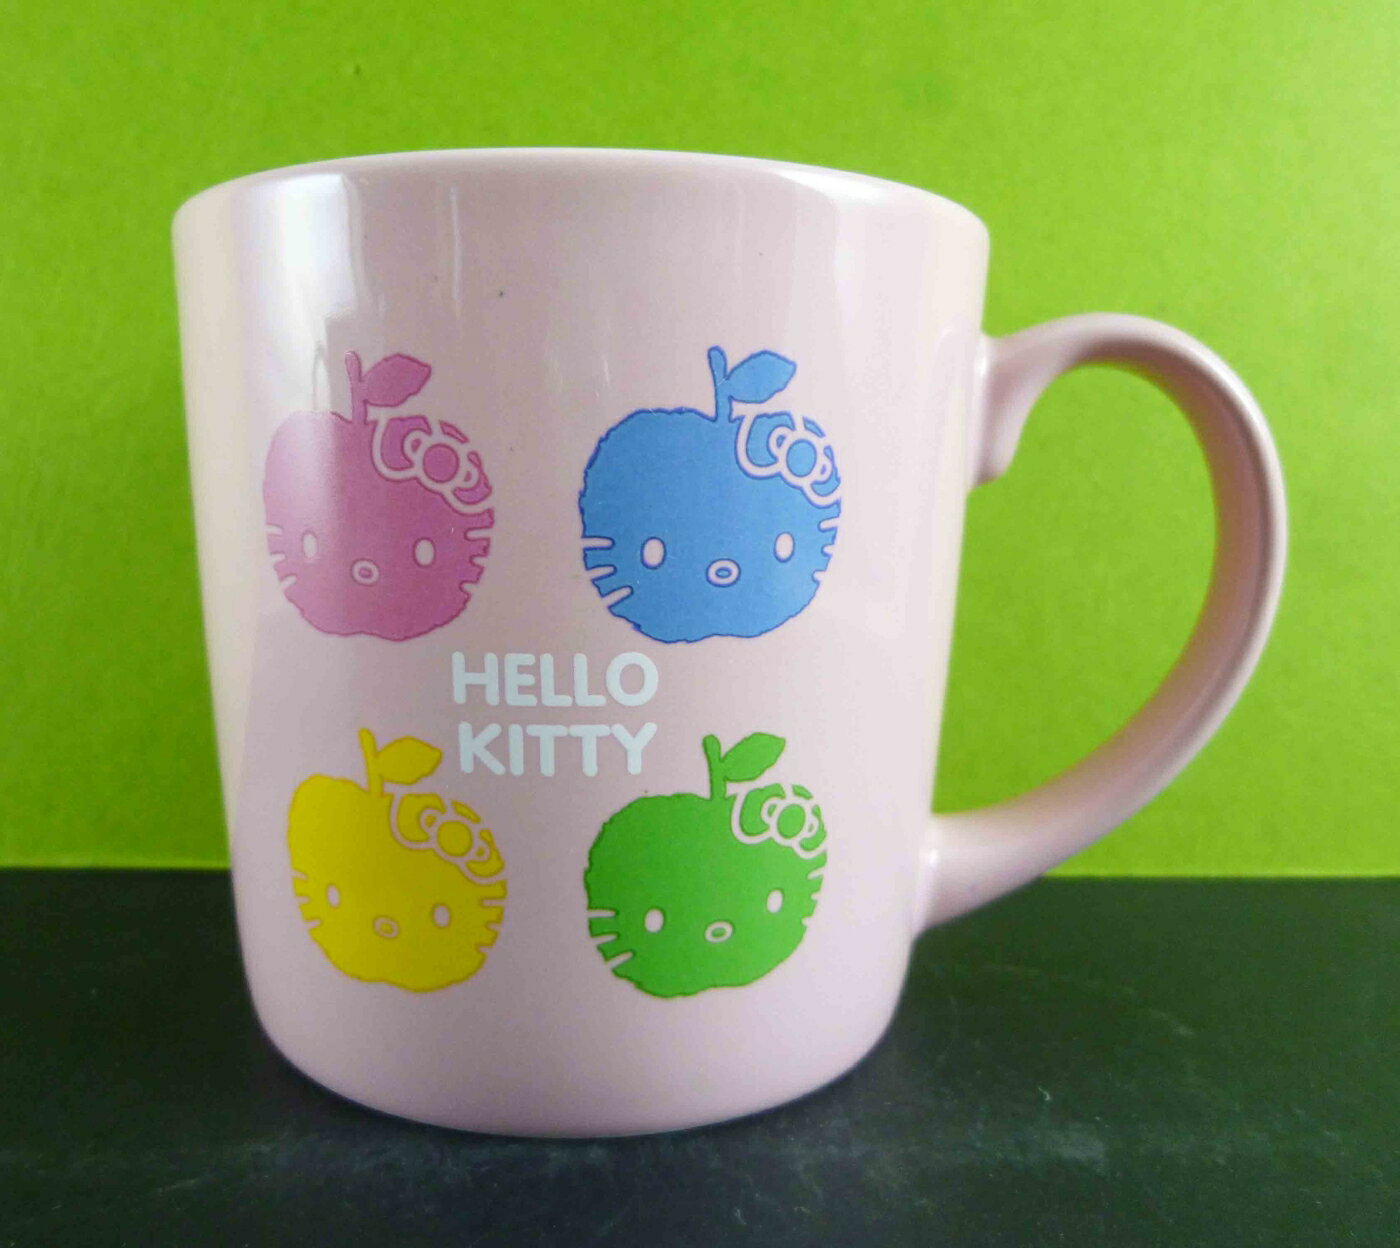 【震撼精品百貨】Hello Kitty 凱蒂貓 馬克杯-粉蘋果 震撼日式精品百貨